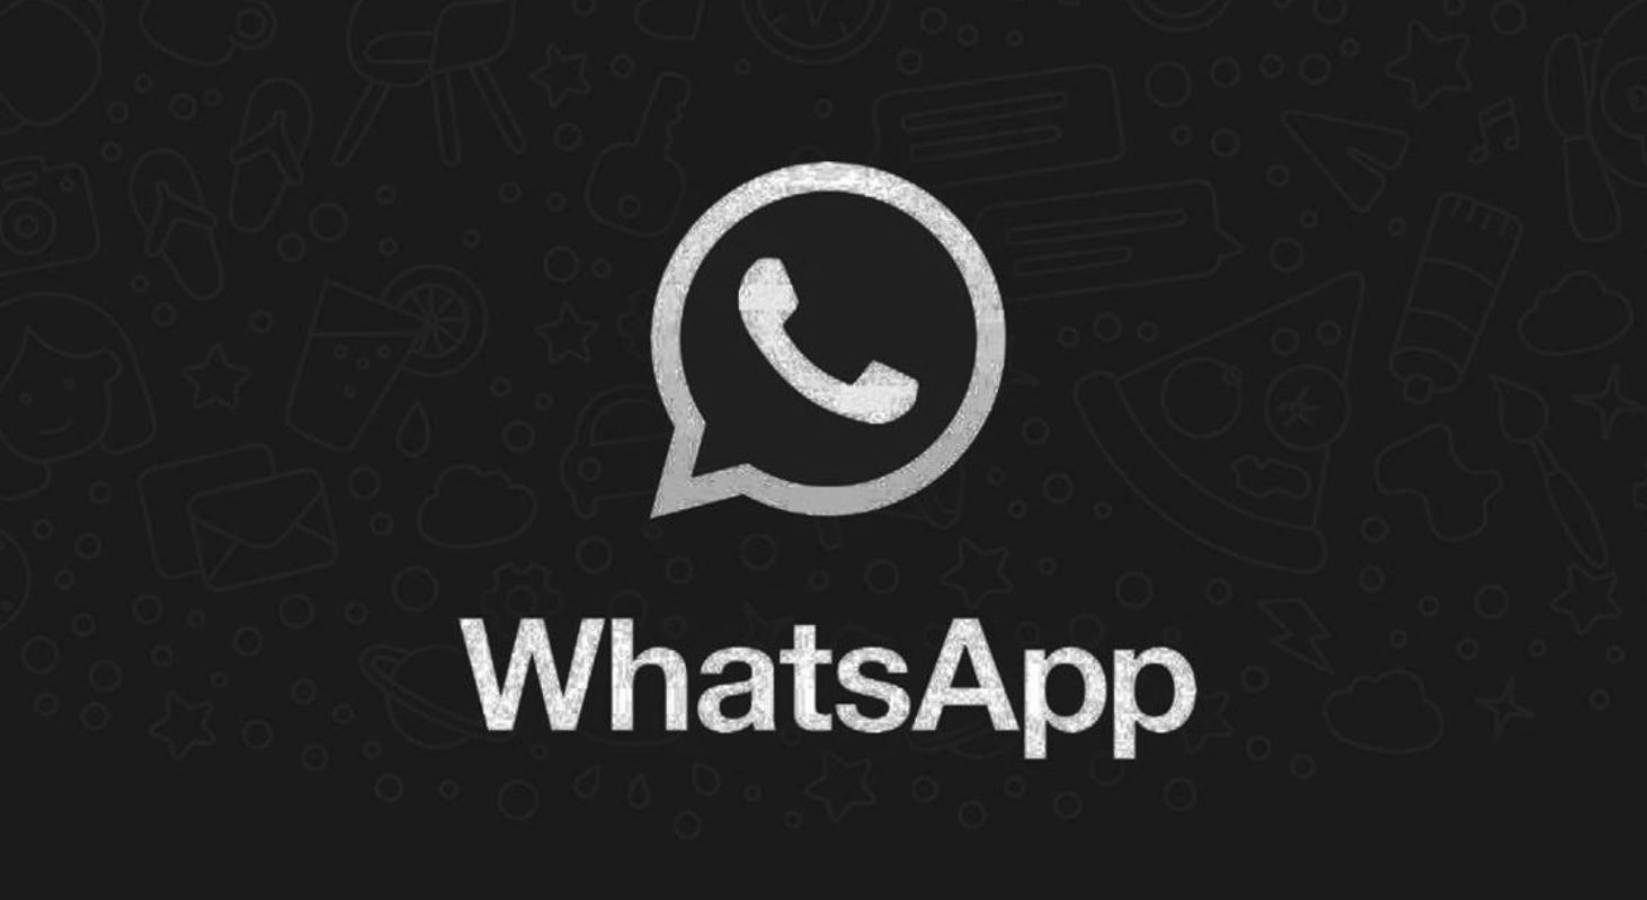 WhatsApp ios 13 dark mode